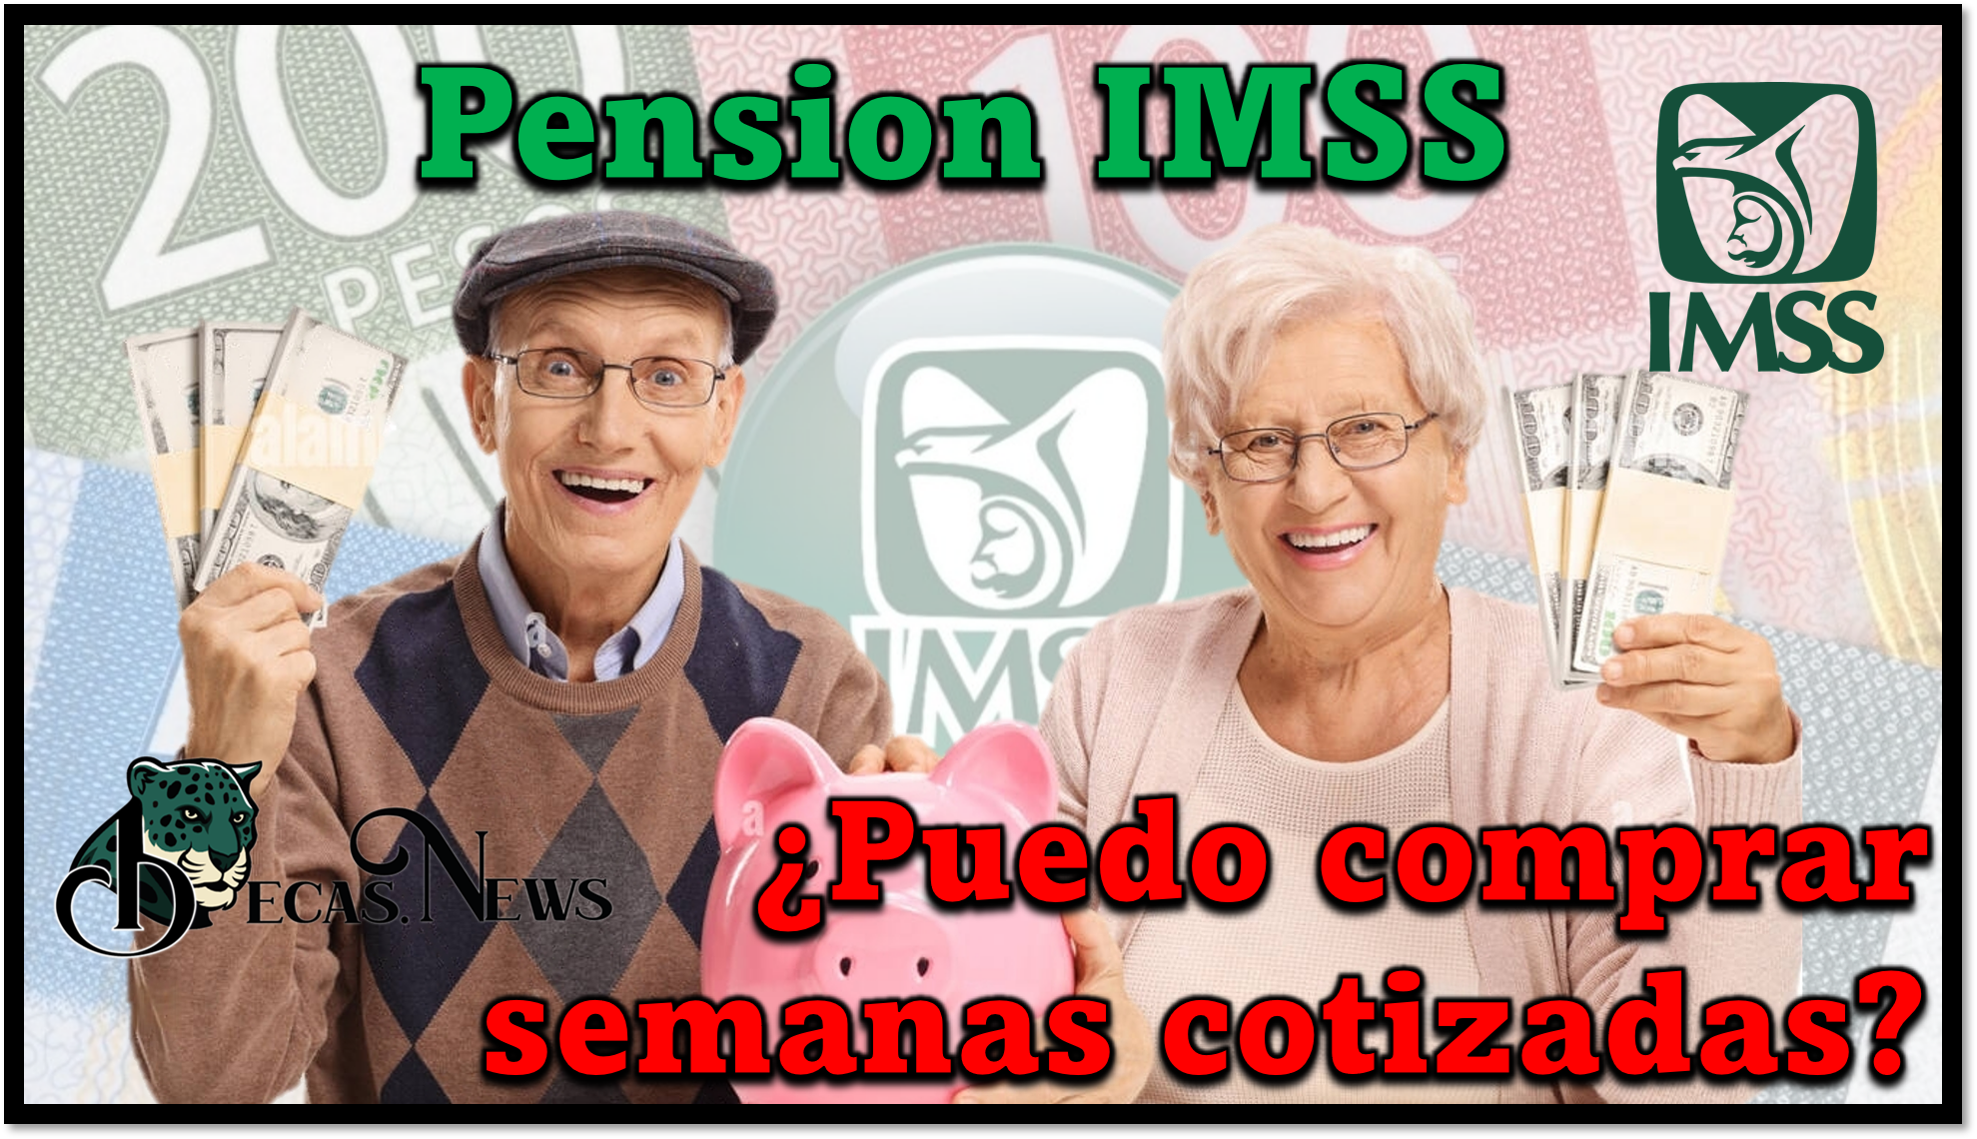 Pensión IMSS: ¿Puedo comprar semanas cotizadas?